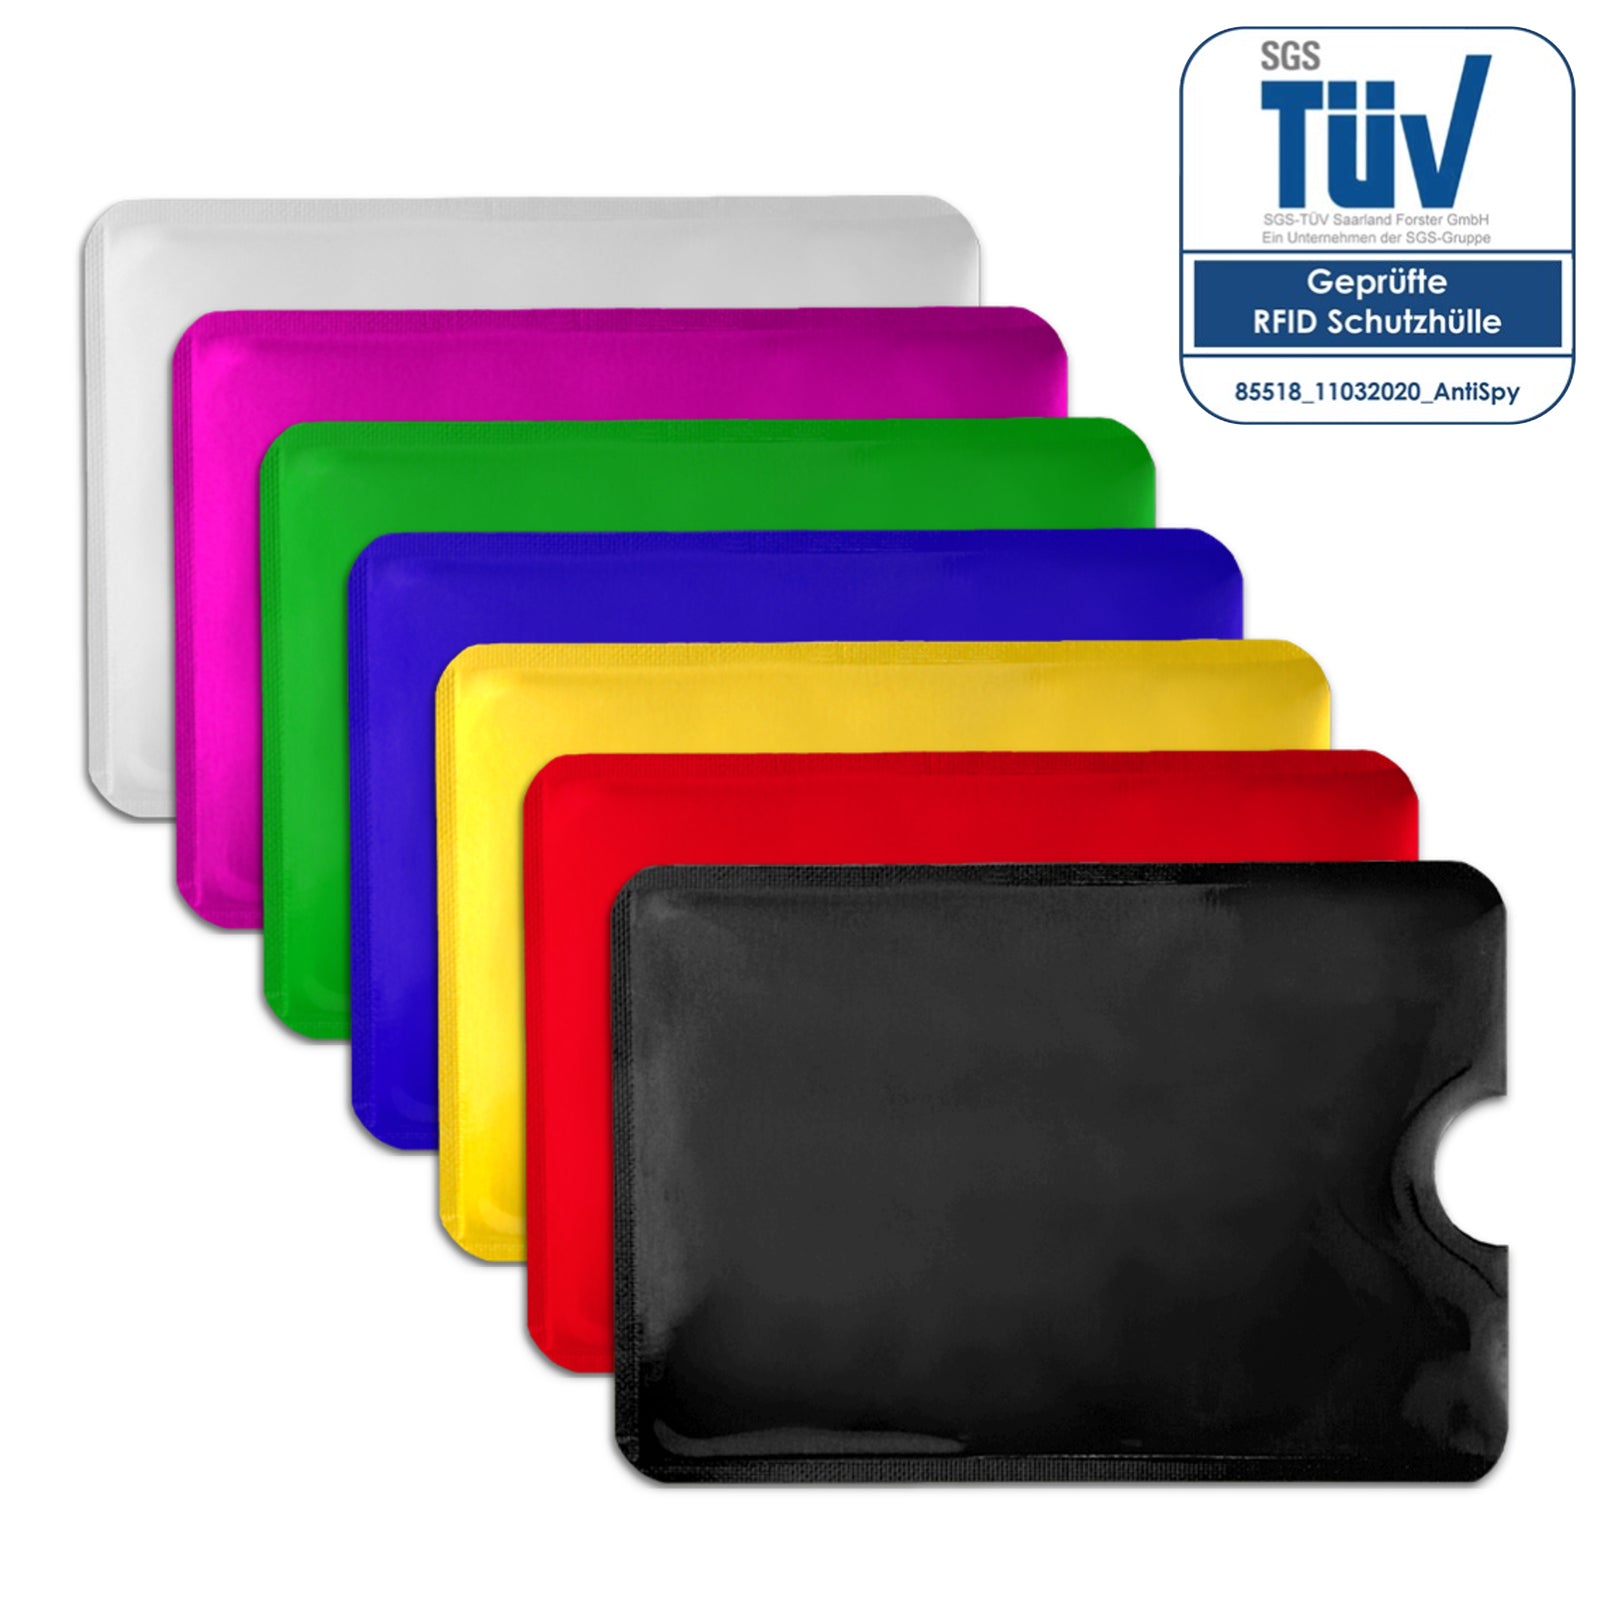 AntiSpyShop RFID Schutzhüllen - verschiedene Farben